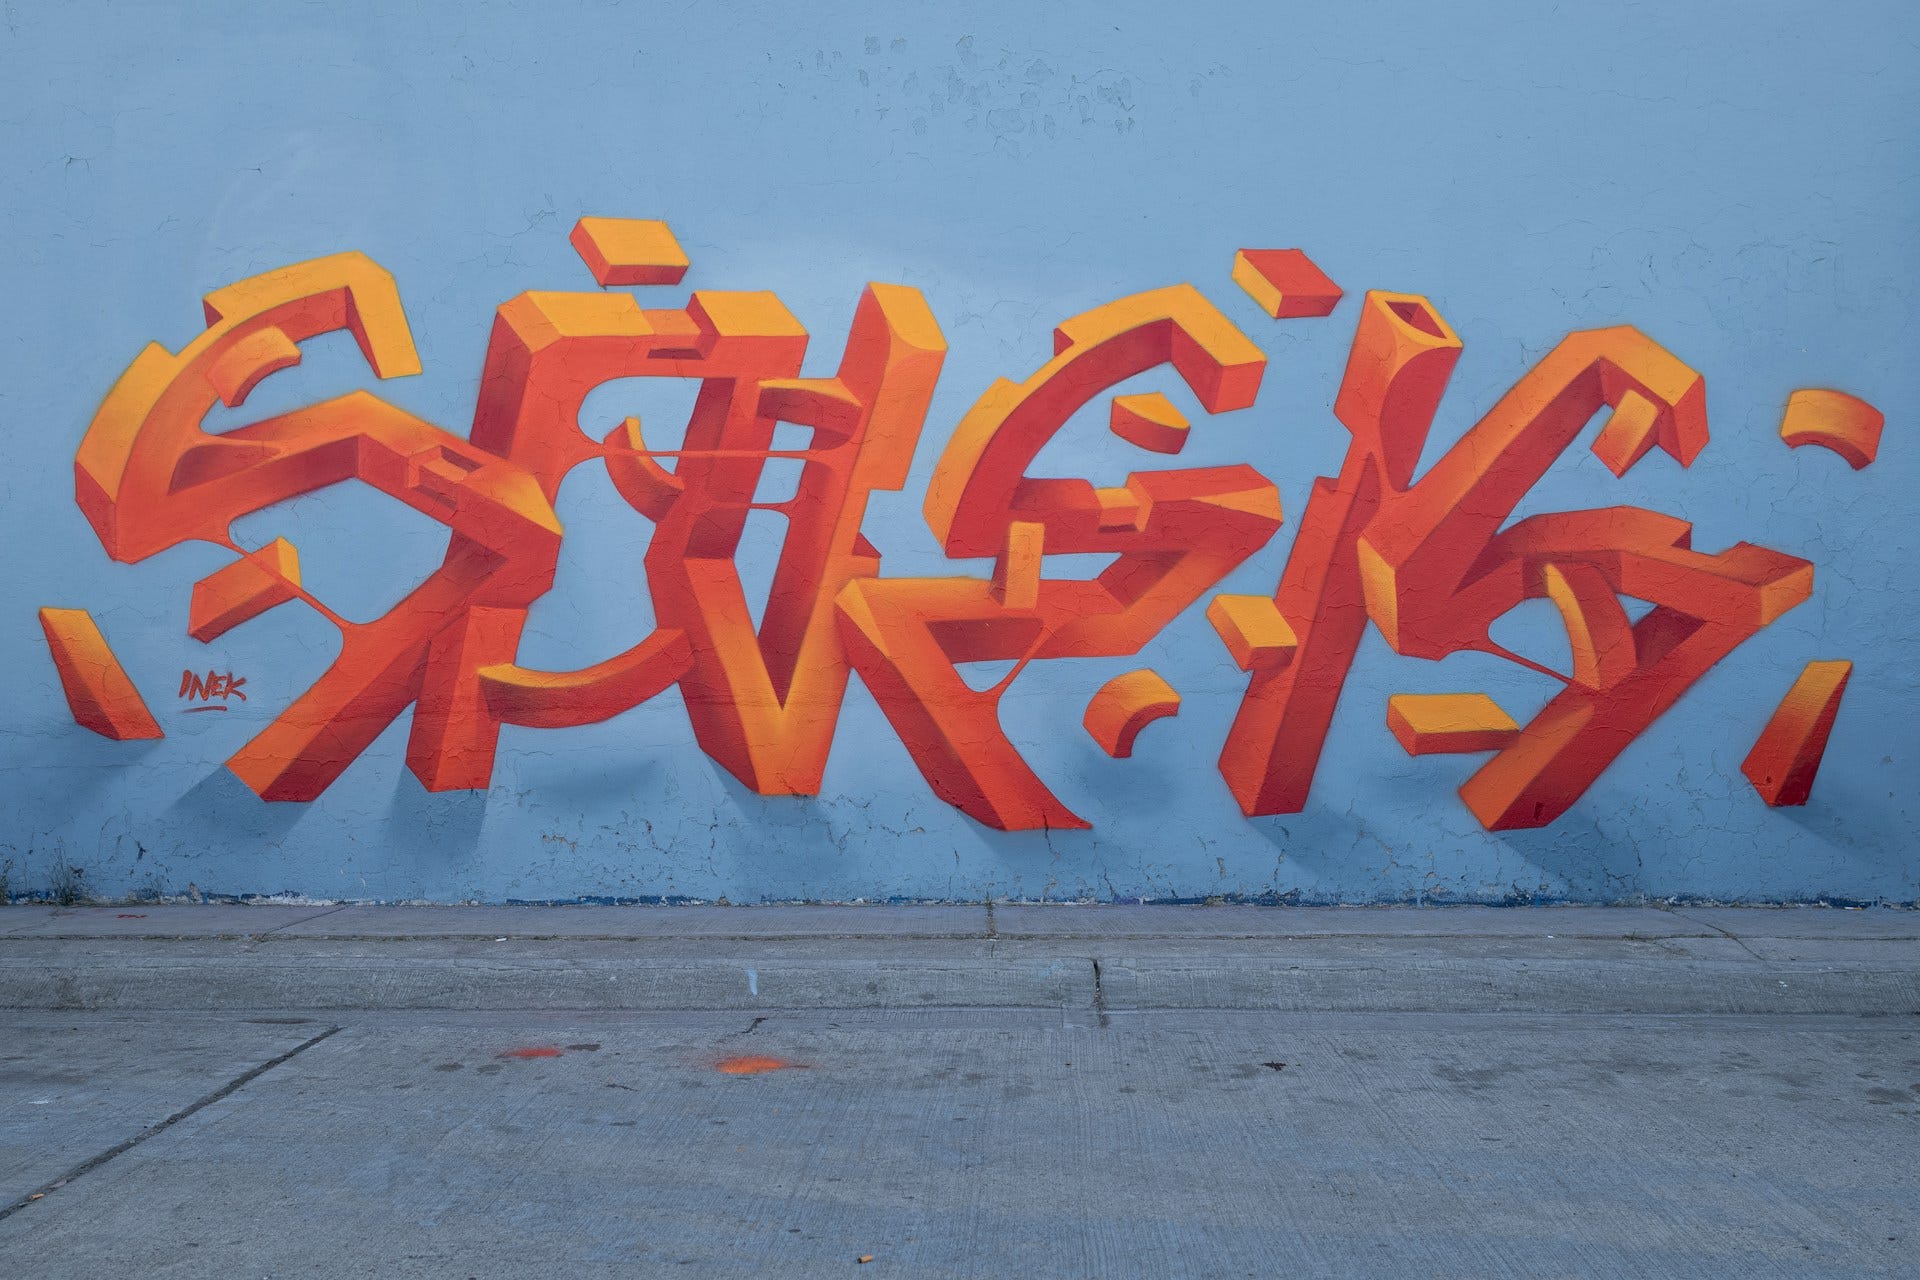 Un’opera di street art in Messico, firmata da Inek. Su uno sfondo celeste si staglia l’illustrazione di forme rosse in 3D che assomigliano a delle lettere astratte.